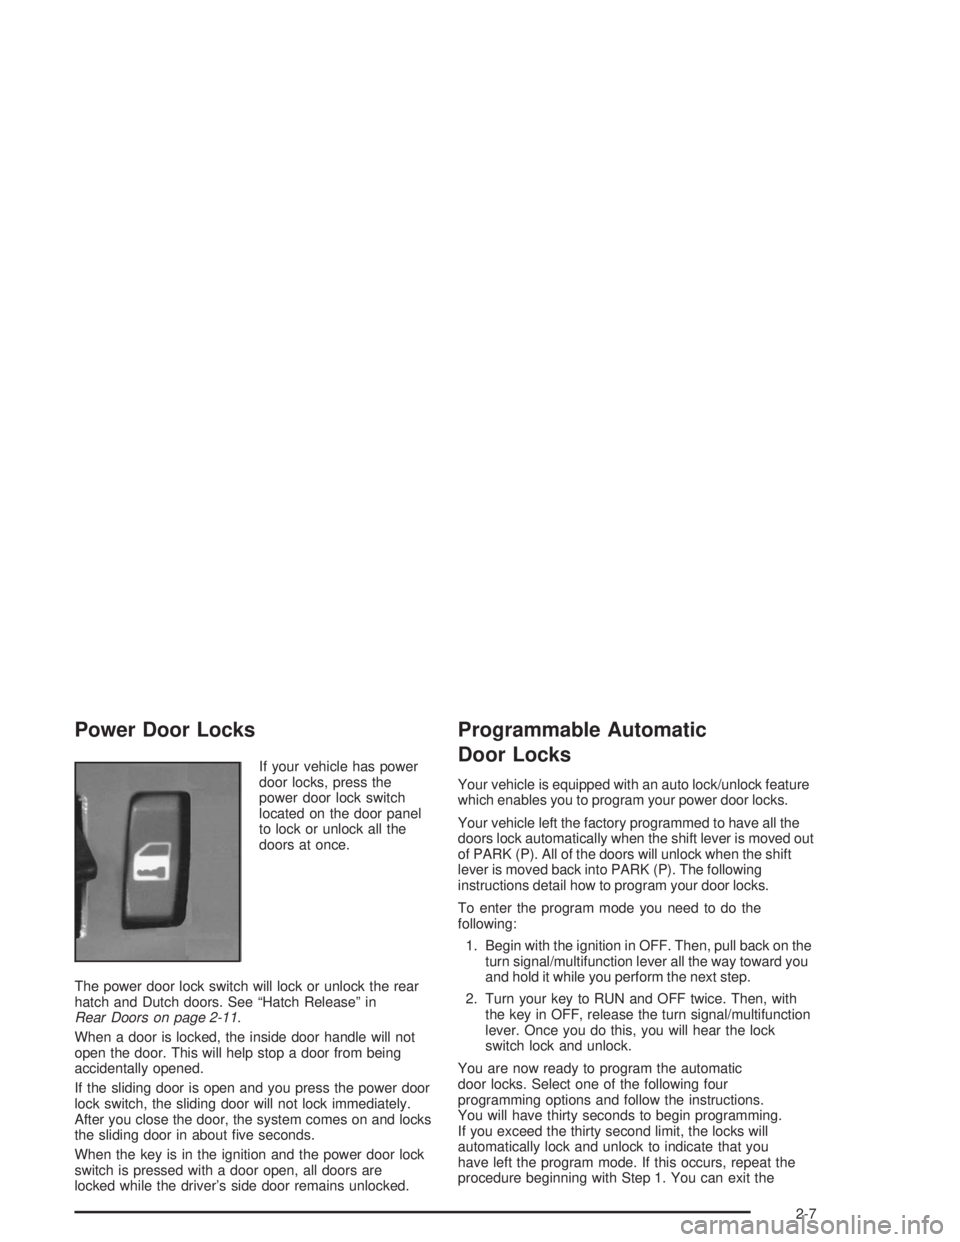 GMC SAFARI 2004  Owners Manual Power Door Locks
If your vehicle has power
door locks, press the
power door lock switch
located on the door panel
to lock or unlock all the
doors at once.
The power door lock switch will lock or unloc